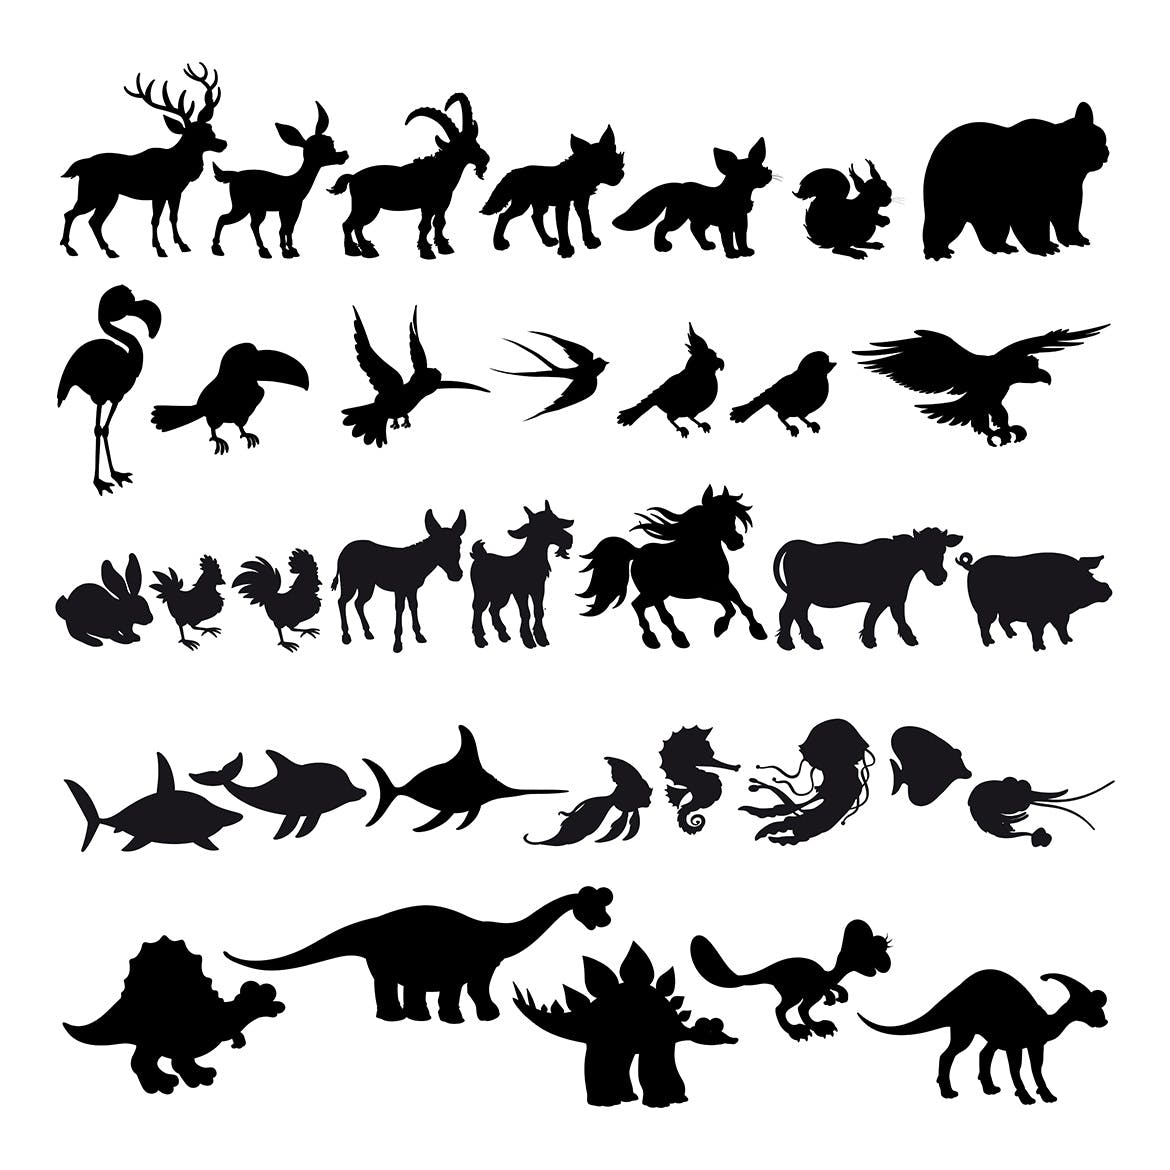 卡通动物剪影矢量插画非凡图库精选素材 Silhouettes of Cartoon Animals插图(1)